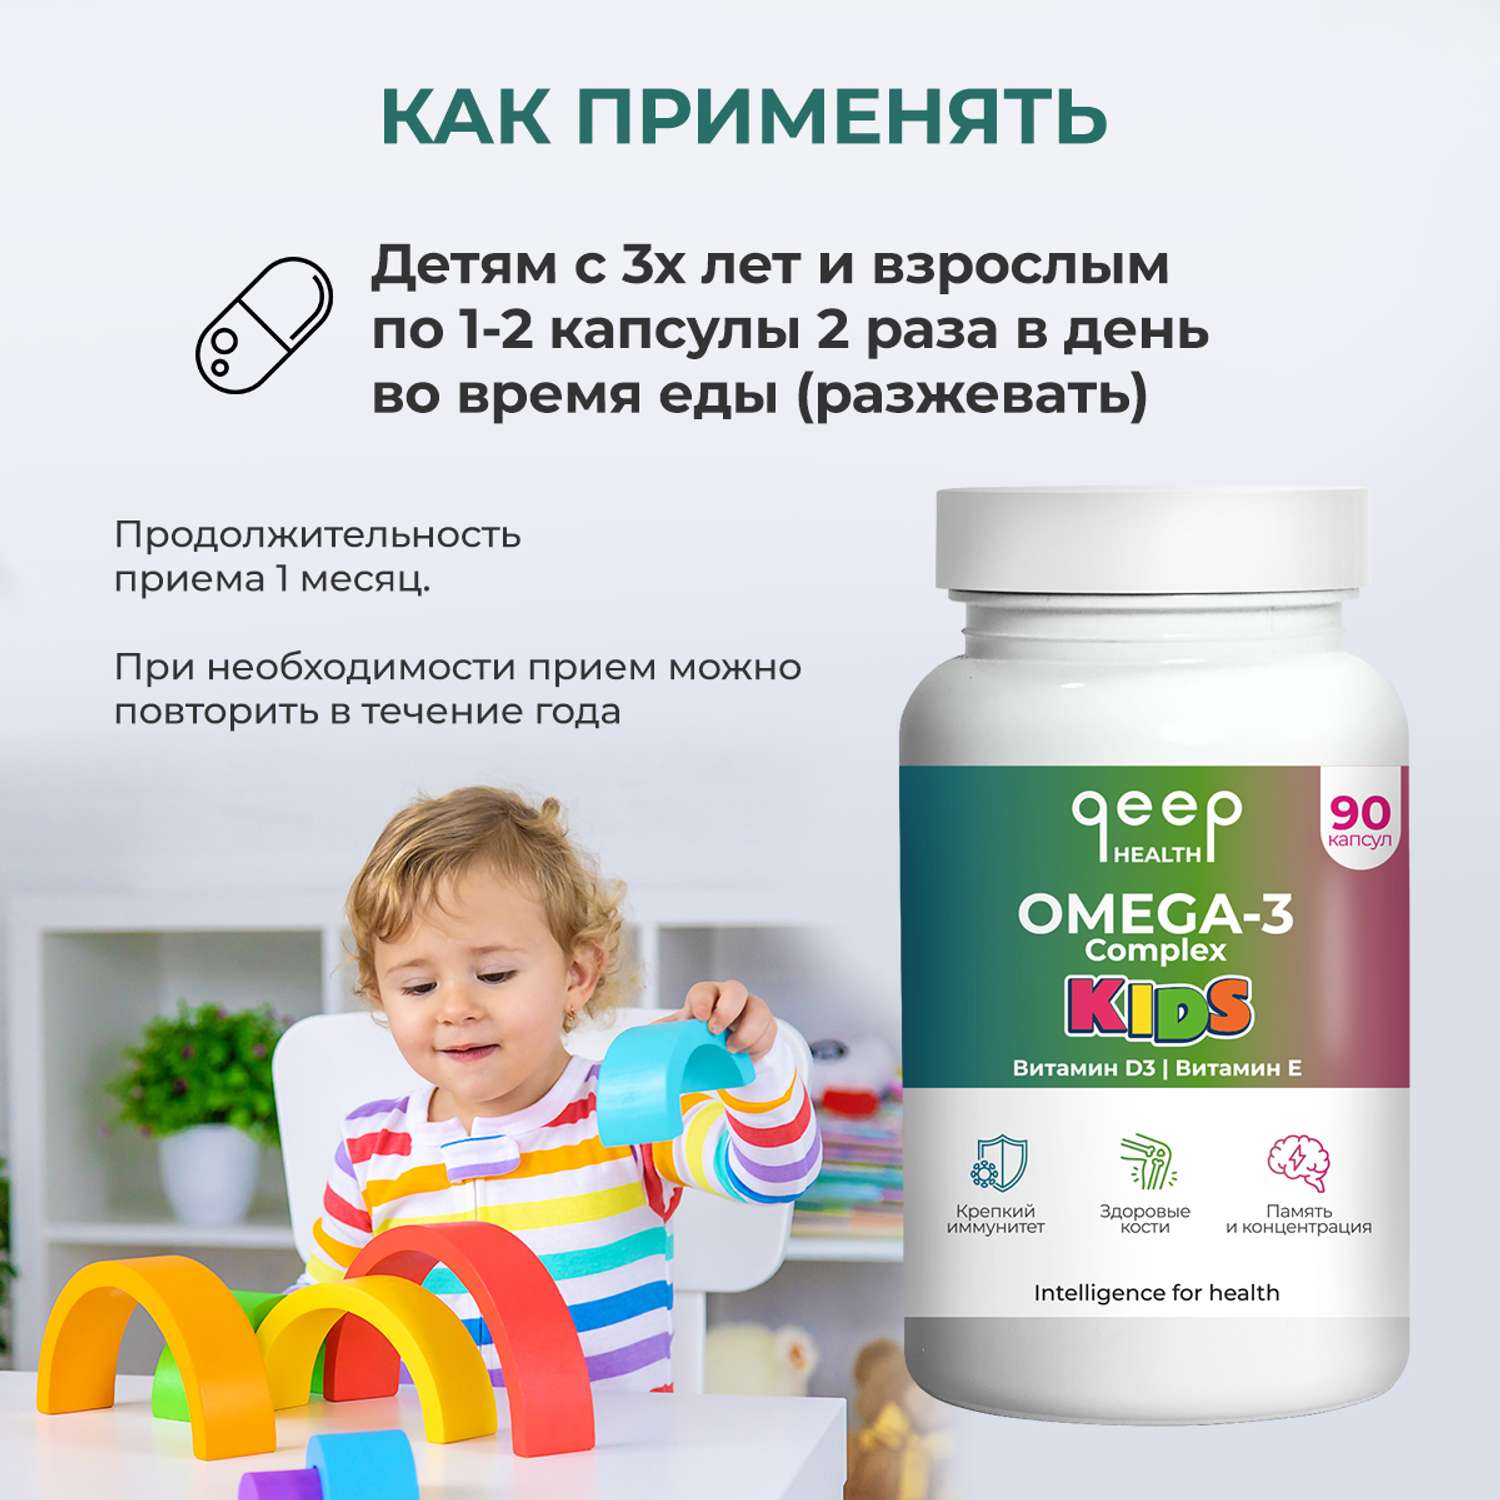 Омега-3 qeep для детей с витамином Д и Е для иммунитета и роста - фото 7